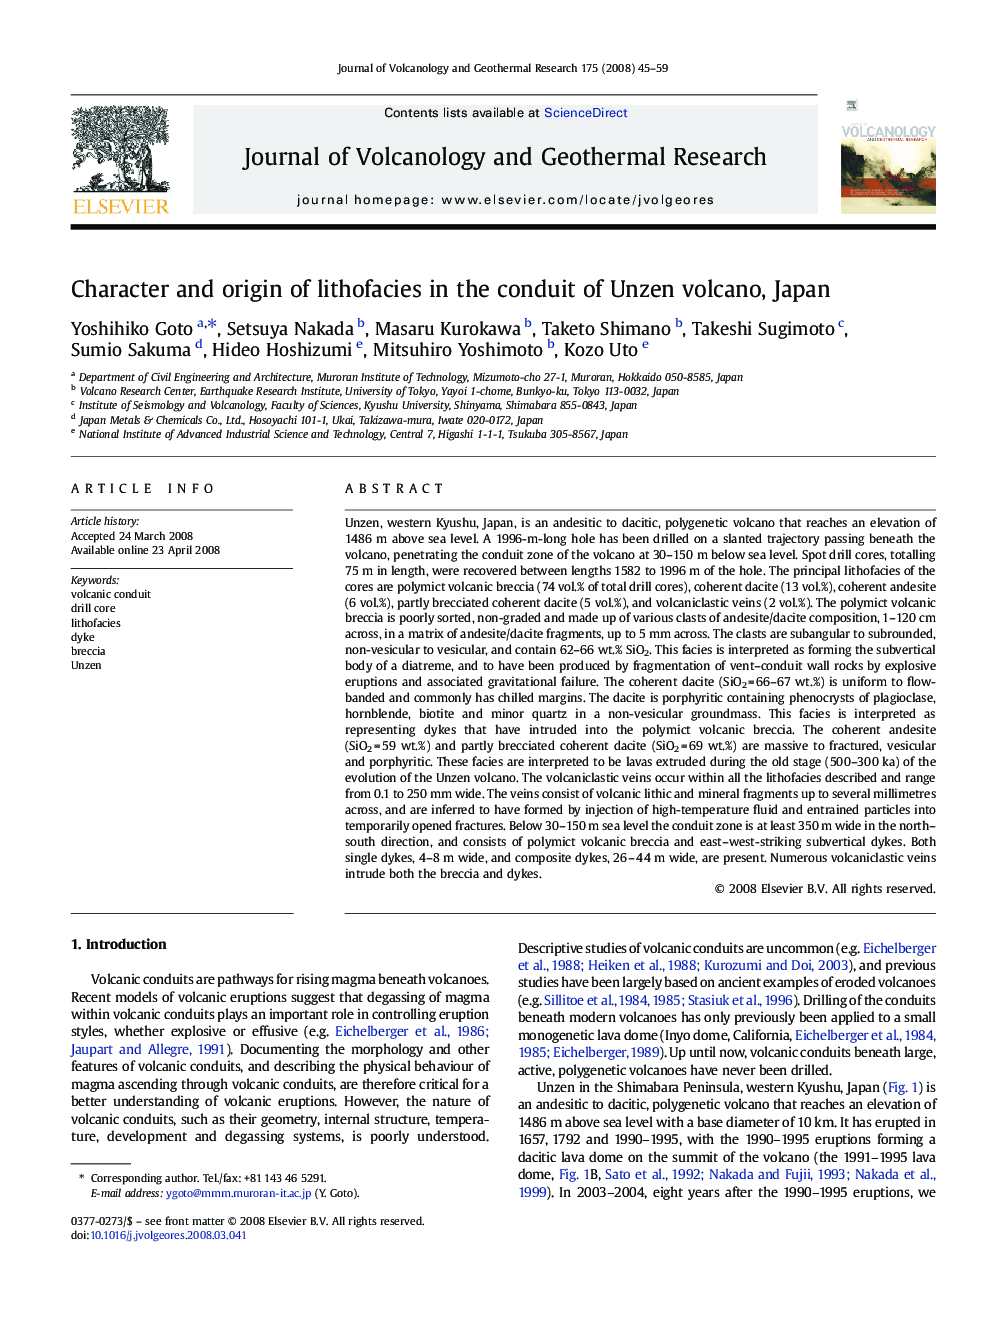 Character and origin of lithofacies in the conduit of Unzen volcano, Japan